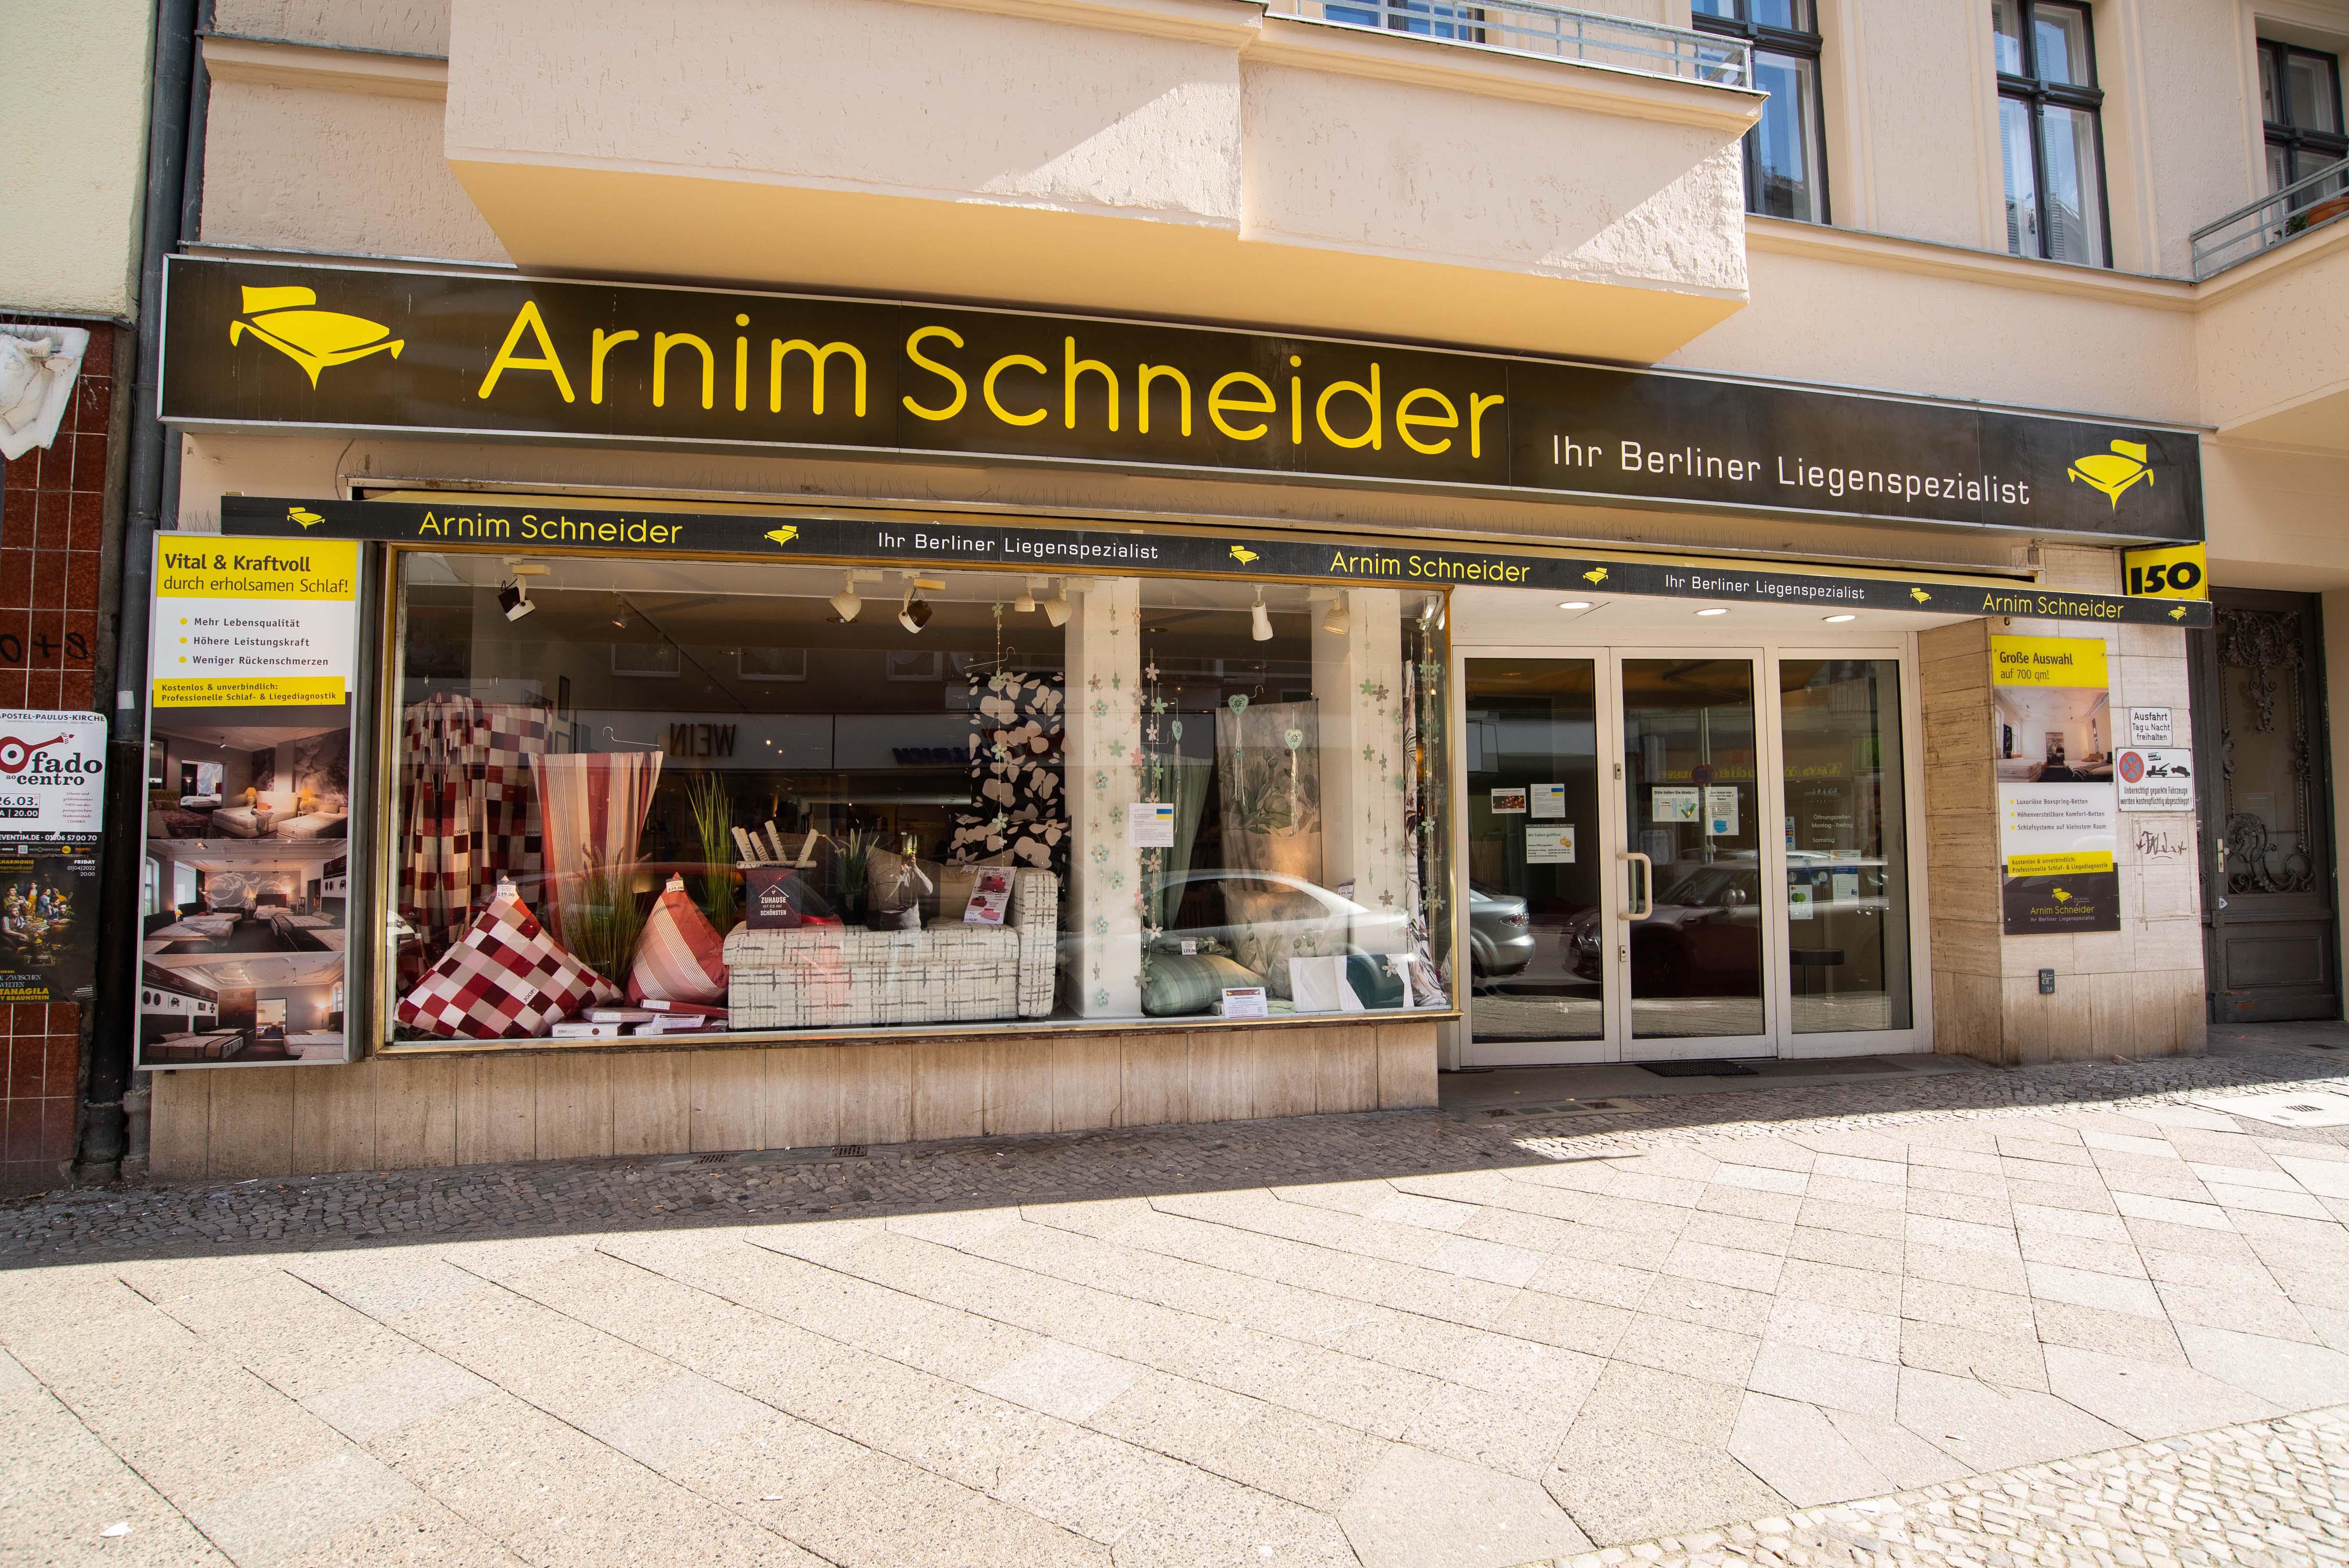 Arnim Schneider GmbH, Wilmersdorfer Str. 150 in Berlin